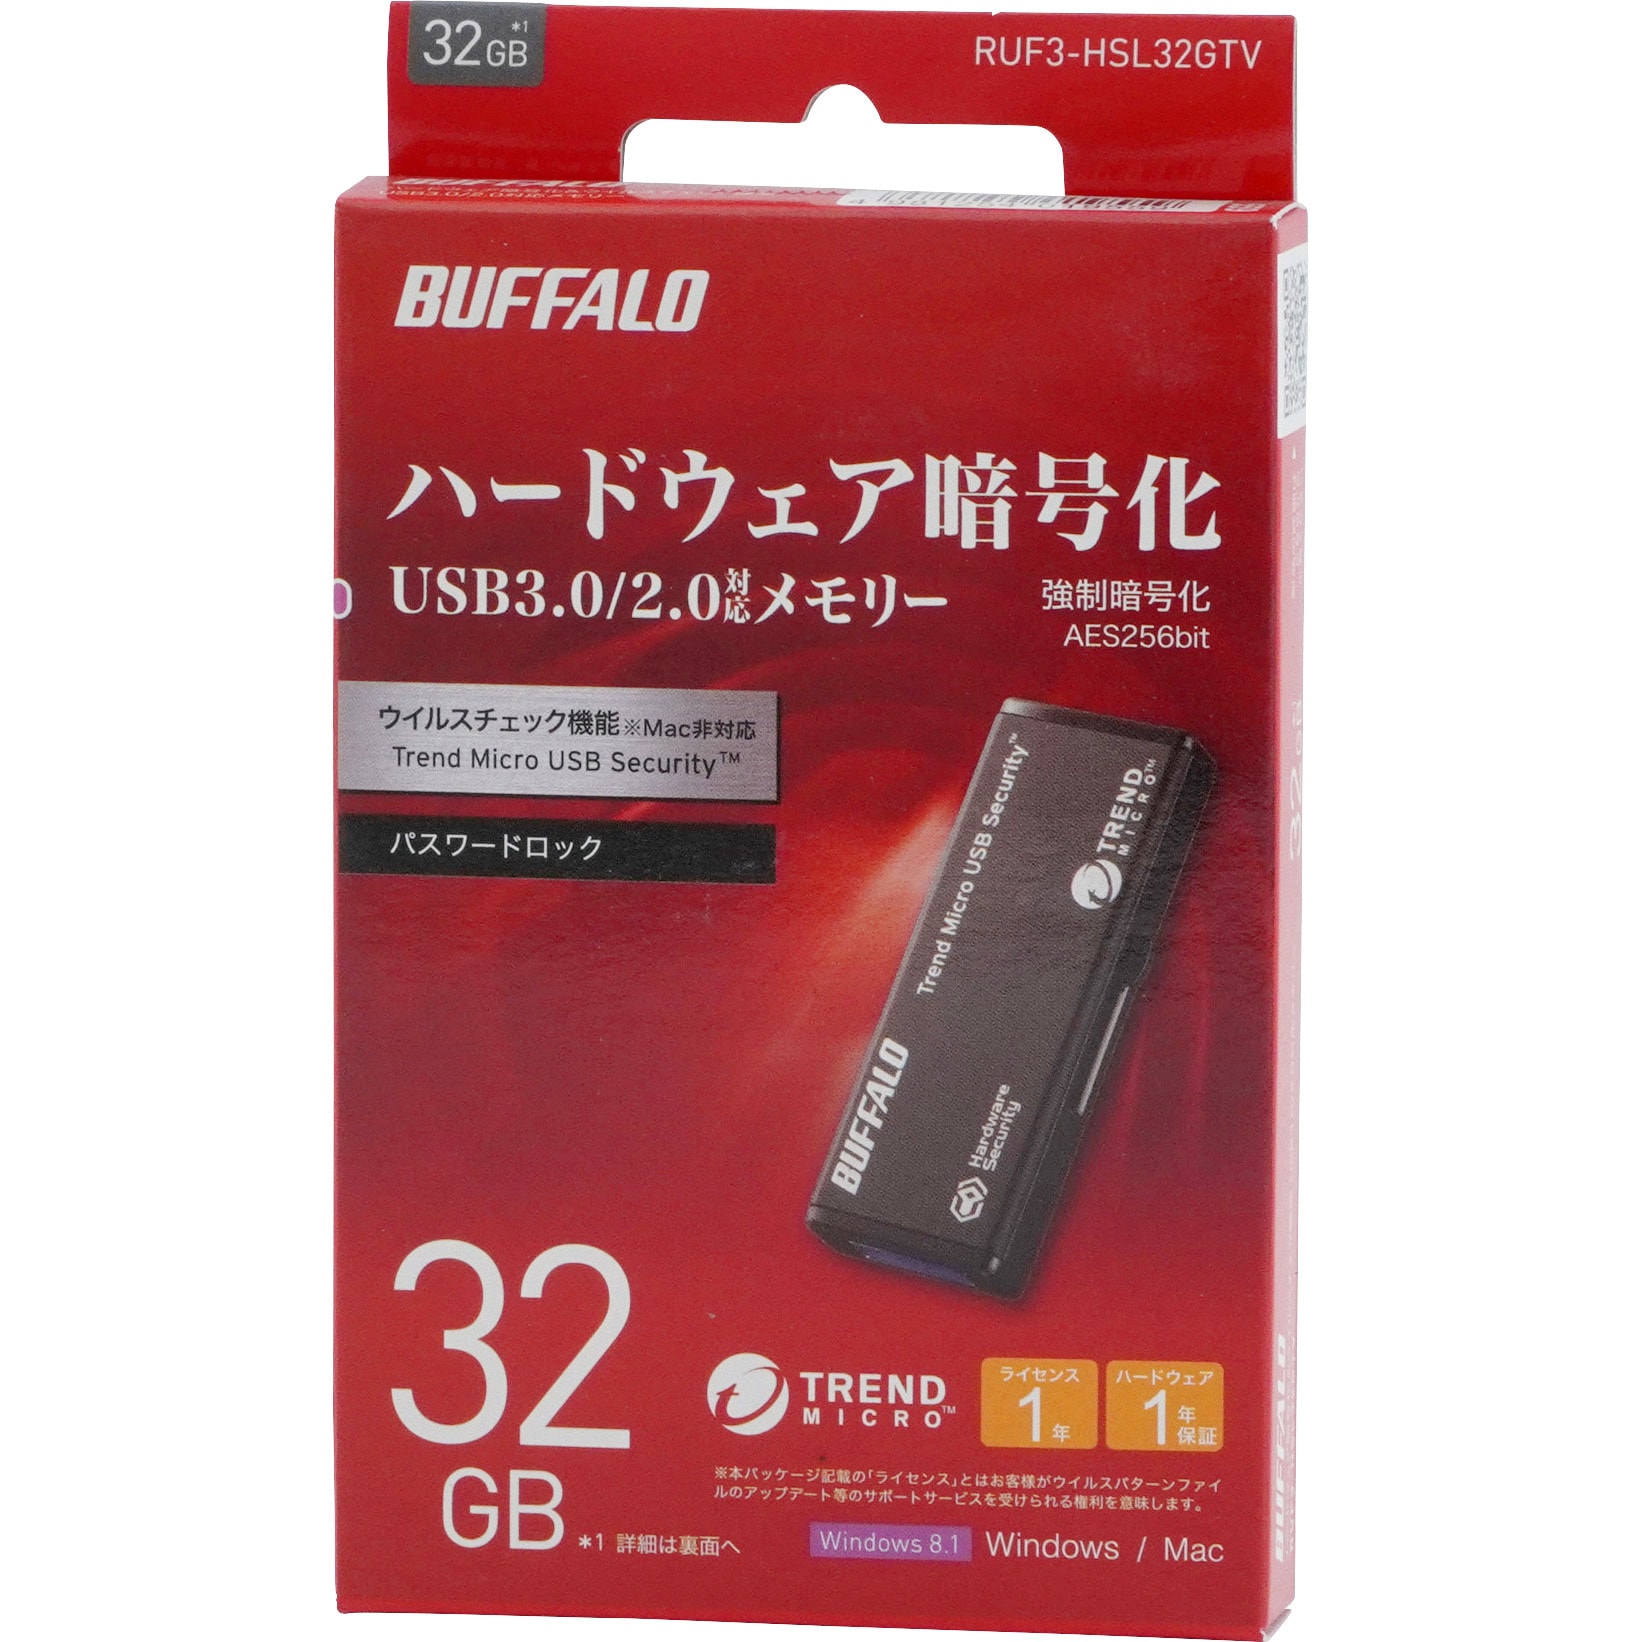 バッファロー 暗号化機能 管理ツール USB3.0 セキュリティーUSBメモリー ウイルスチェック 5年 8GB RUF3-HS8GTV5 